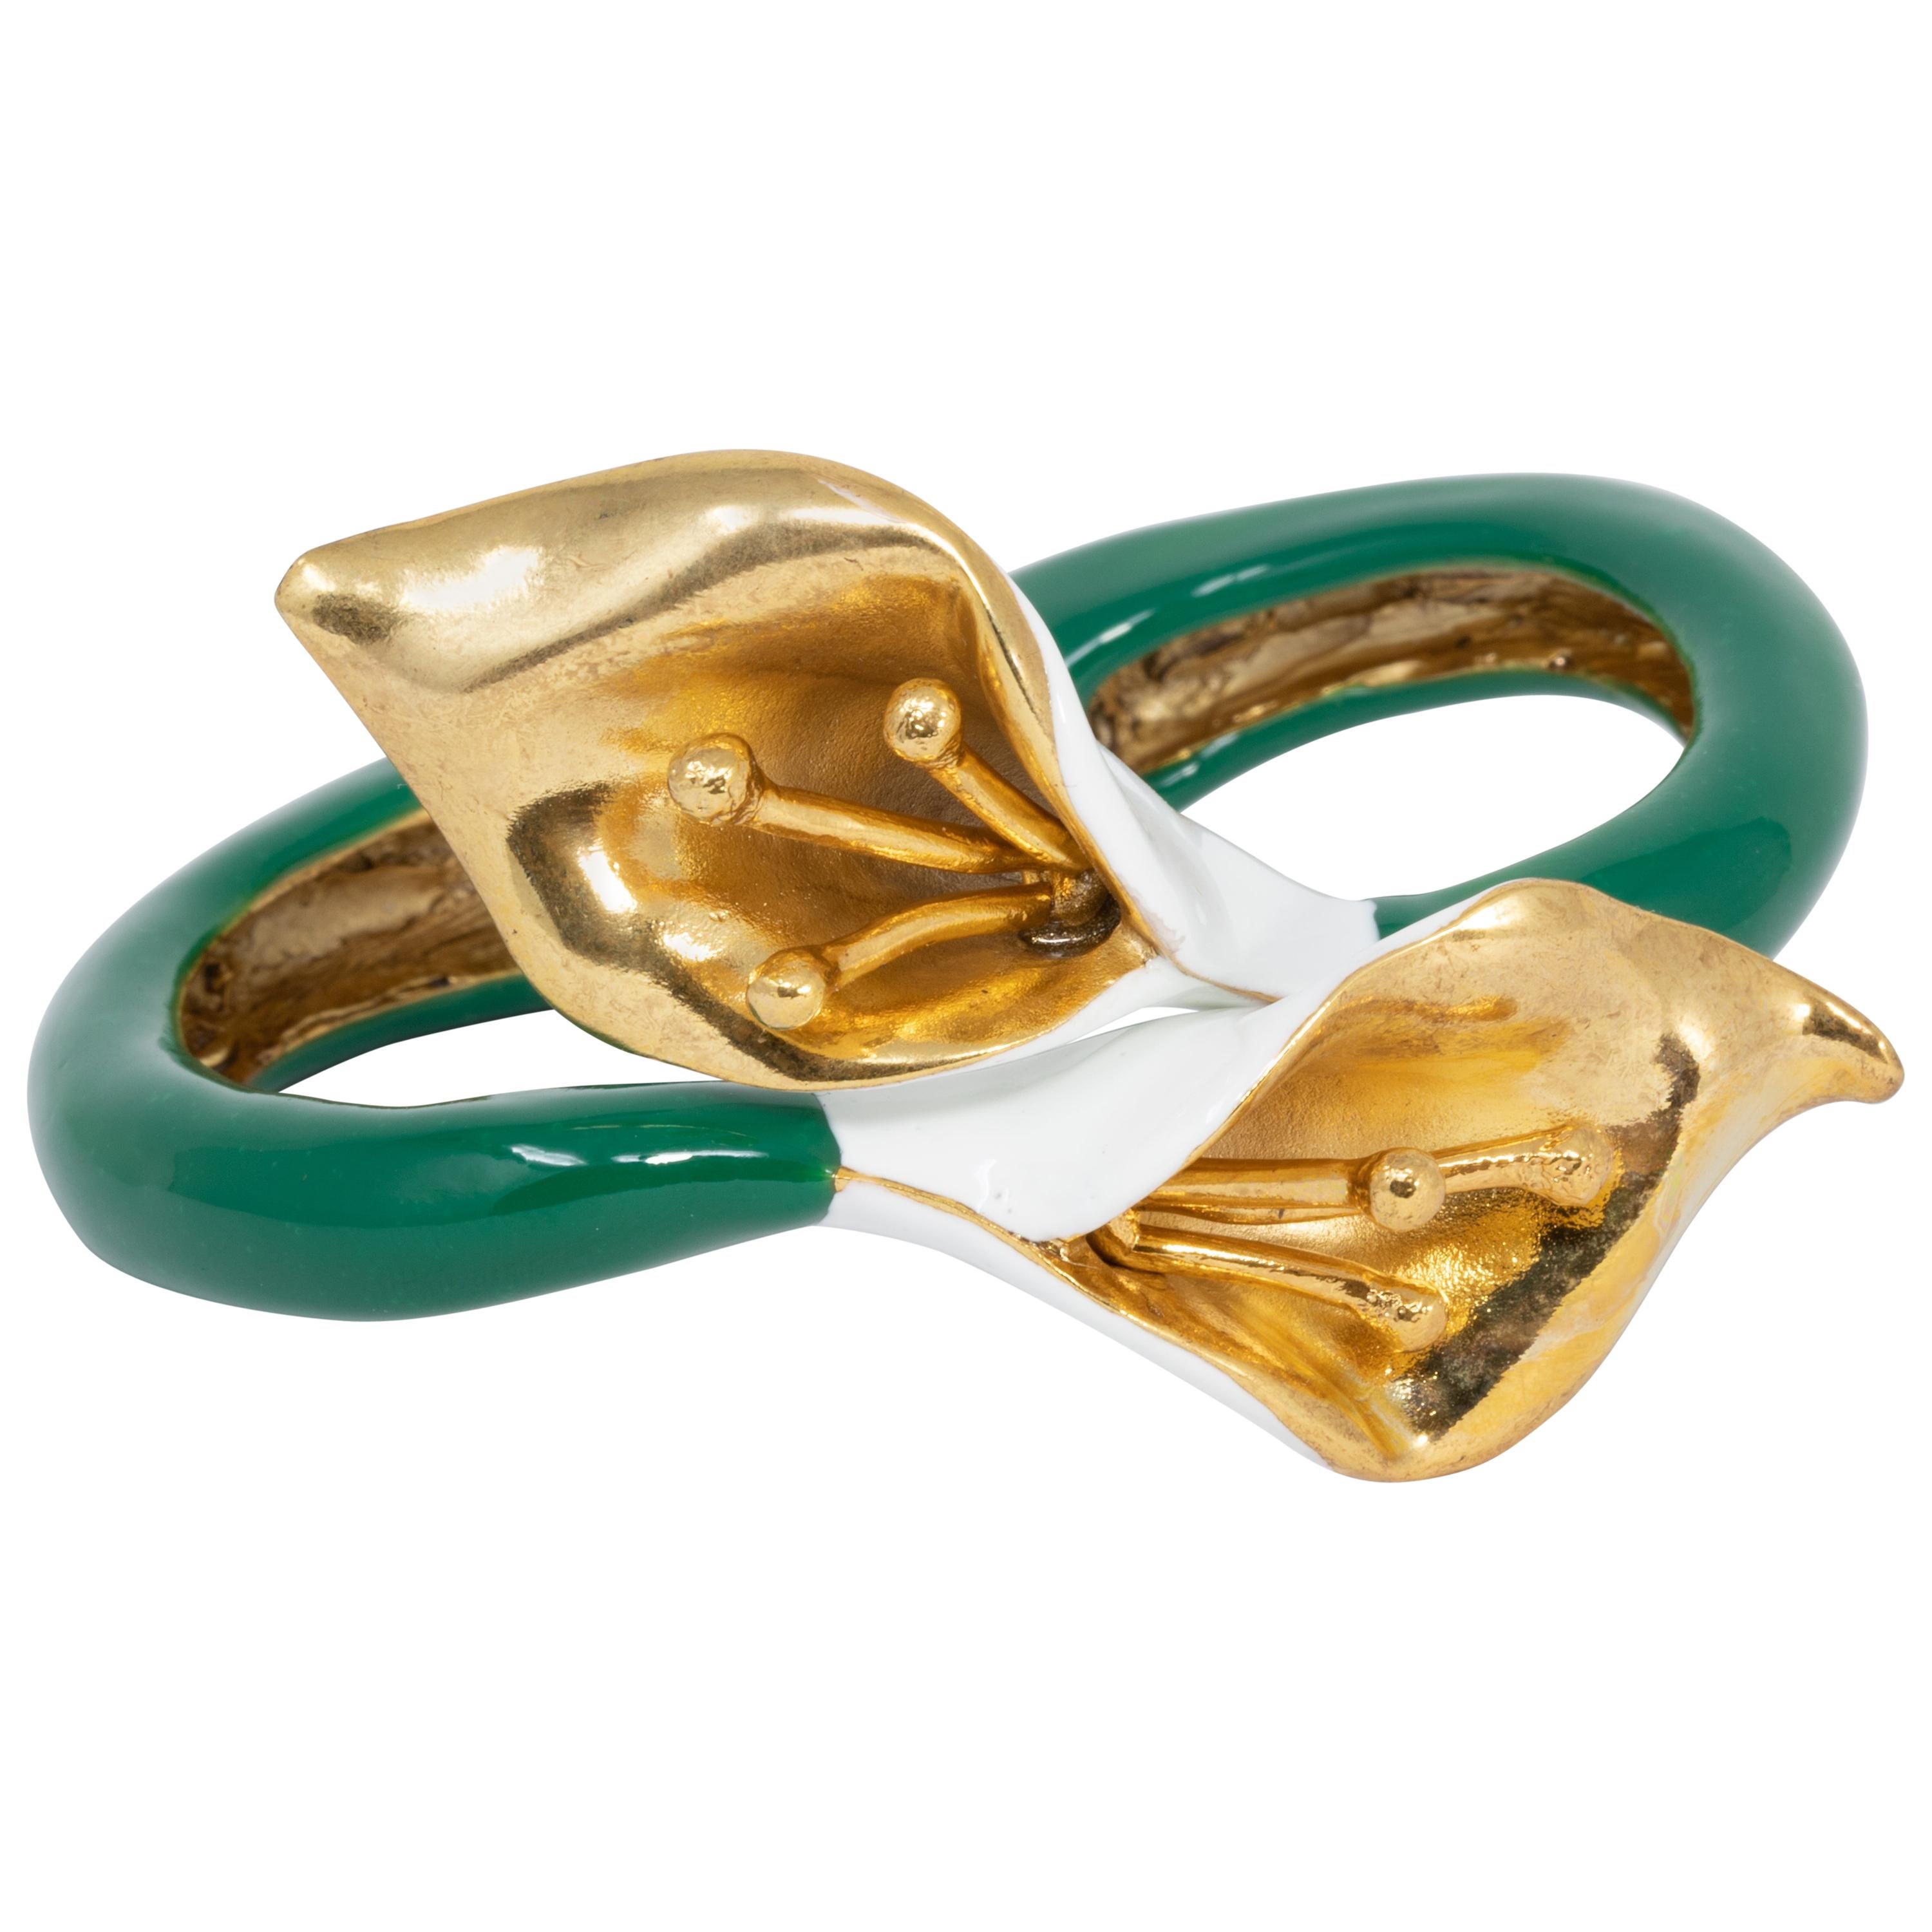 Oscar de la Renta Bemaltes Calla Lily-Armband mit Klappverschluss, grün, weiße Emaille, Gold